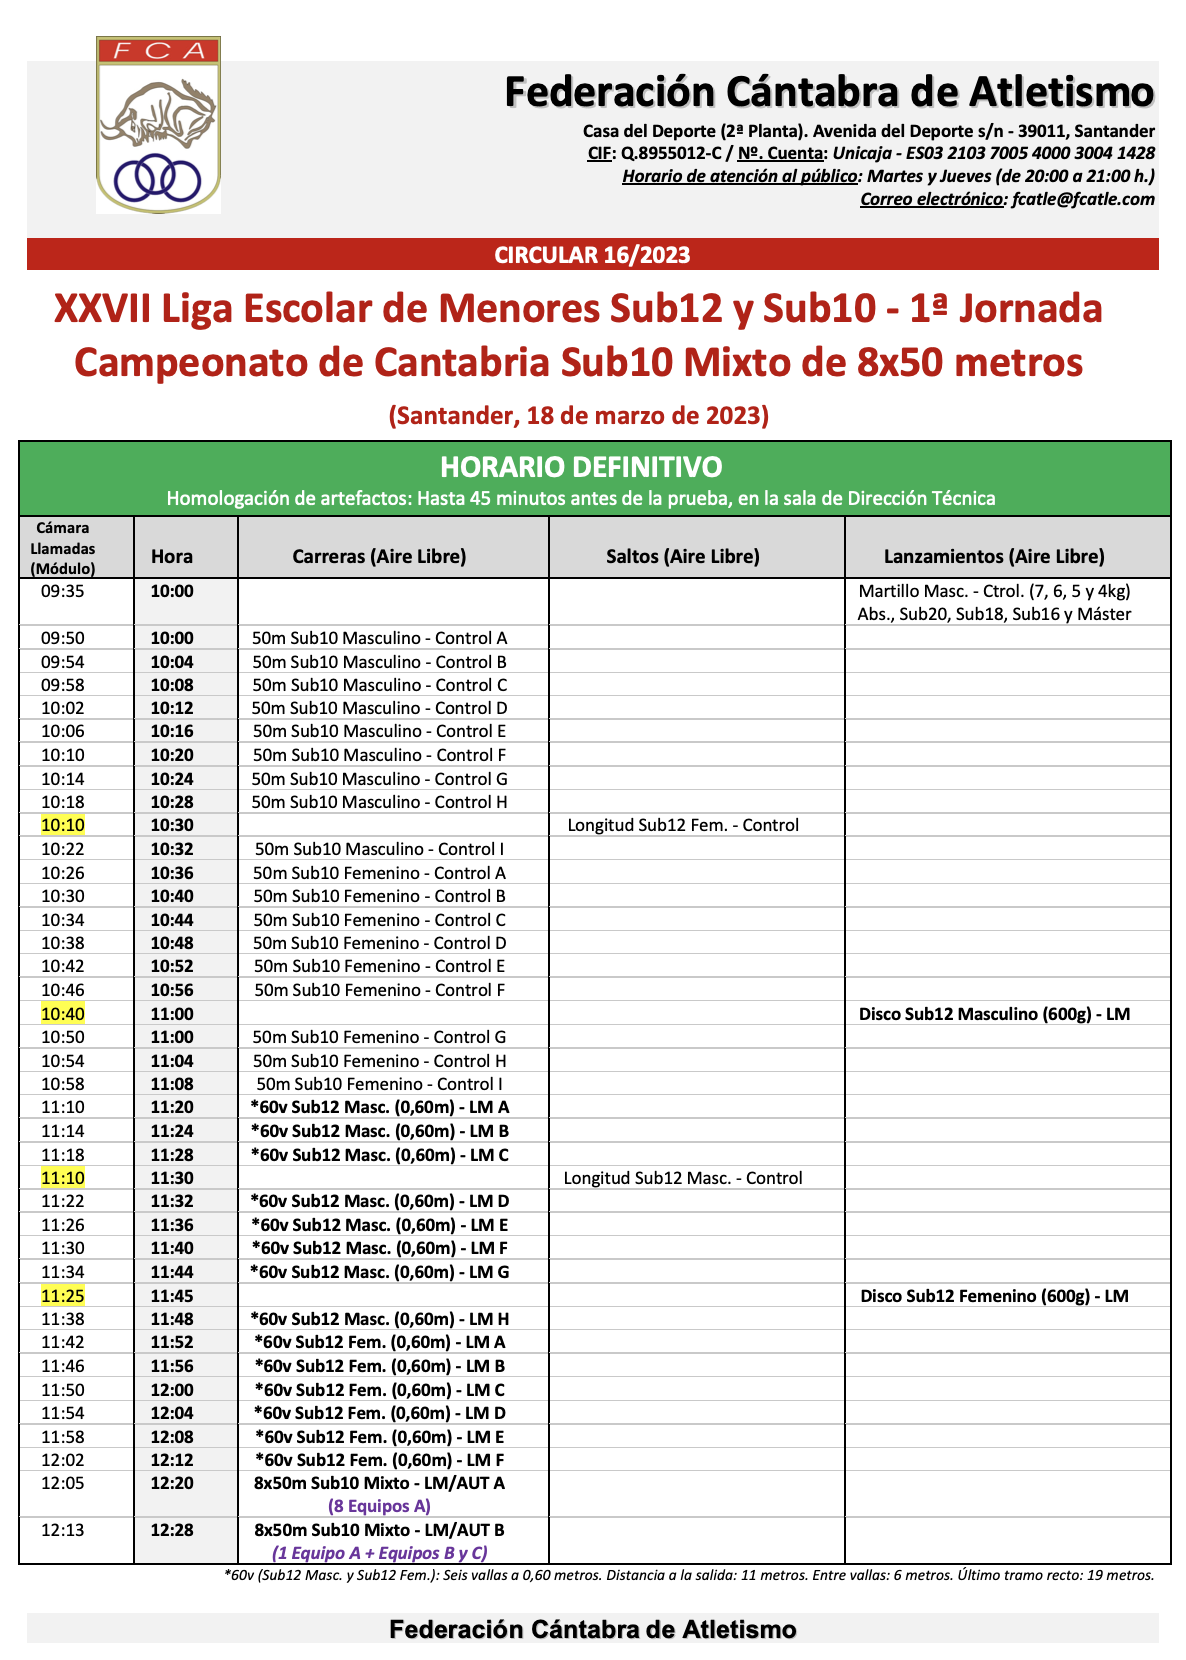 XXVII Liga Escolar de Menores Sub12 y Sub10 - 1º Jornada @ Santander, Cantabria